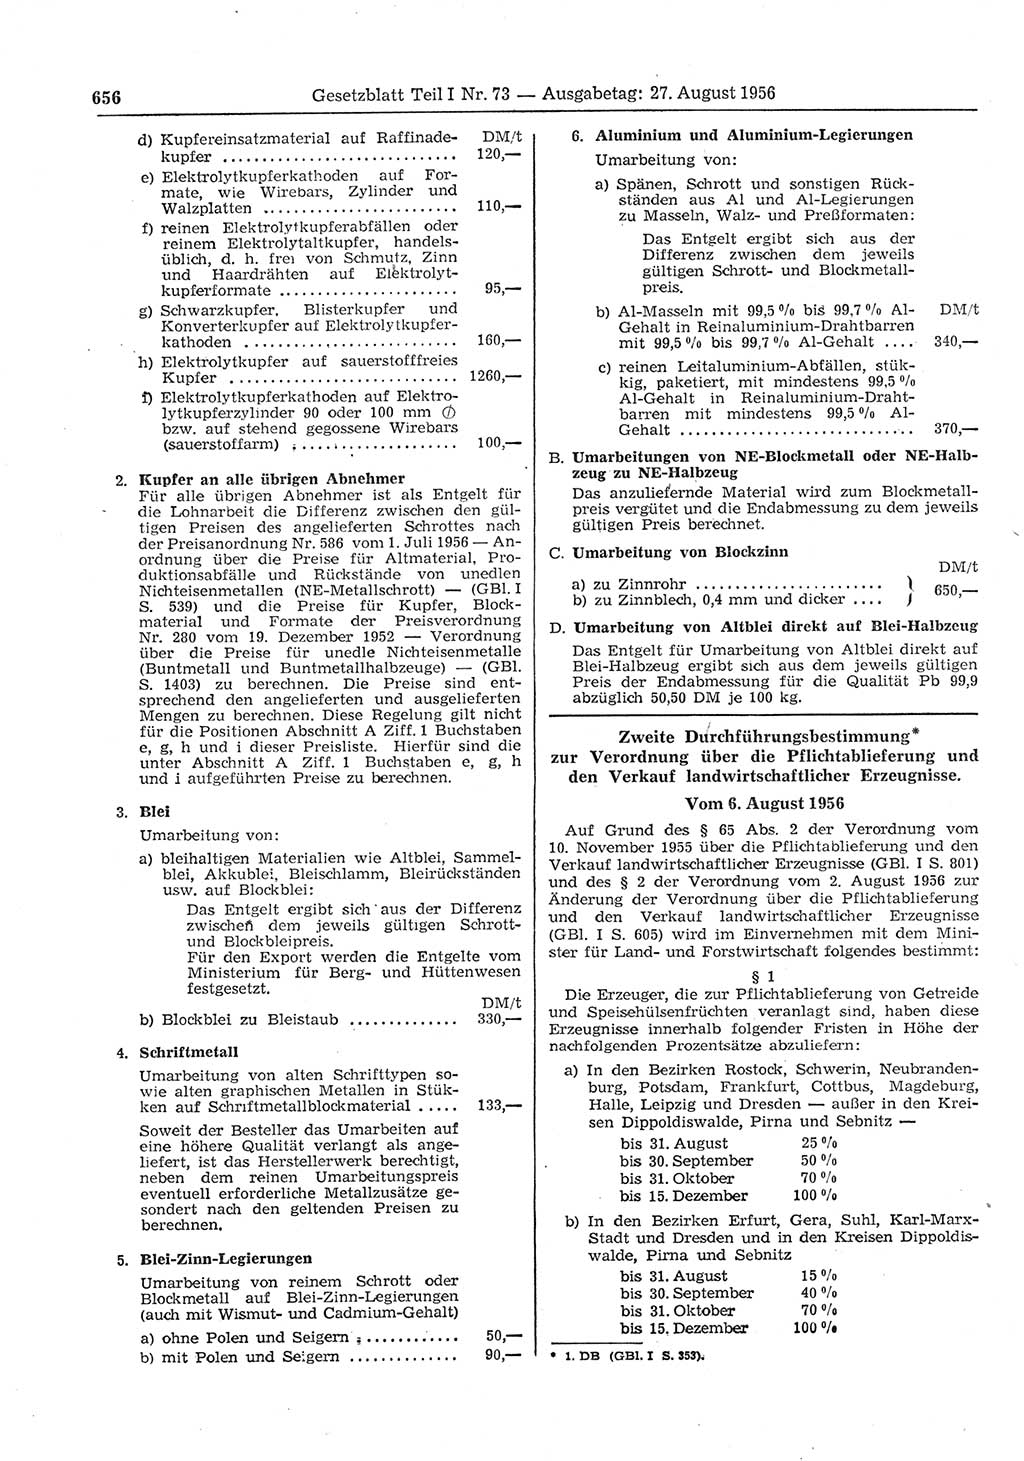 Gesetzblatt (GBl.) der Deutschen Demokratischen Republik (DDR) Teil Ⅰ 1956, Seite 656 (GBl. DDR Ⅰ 1956, S. 656)